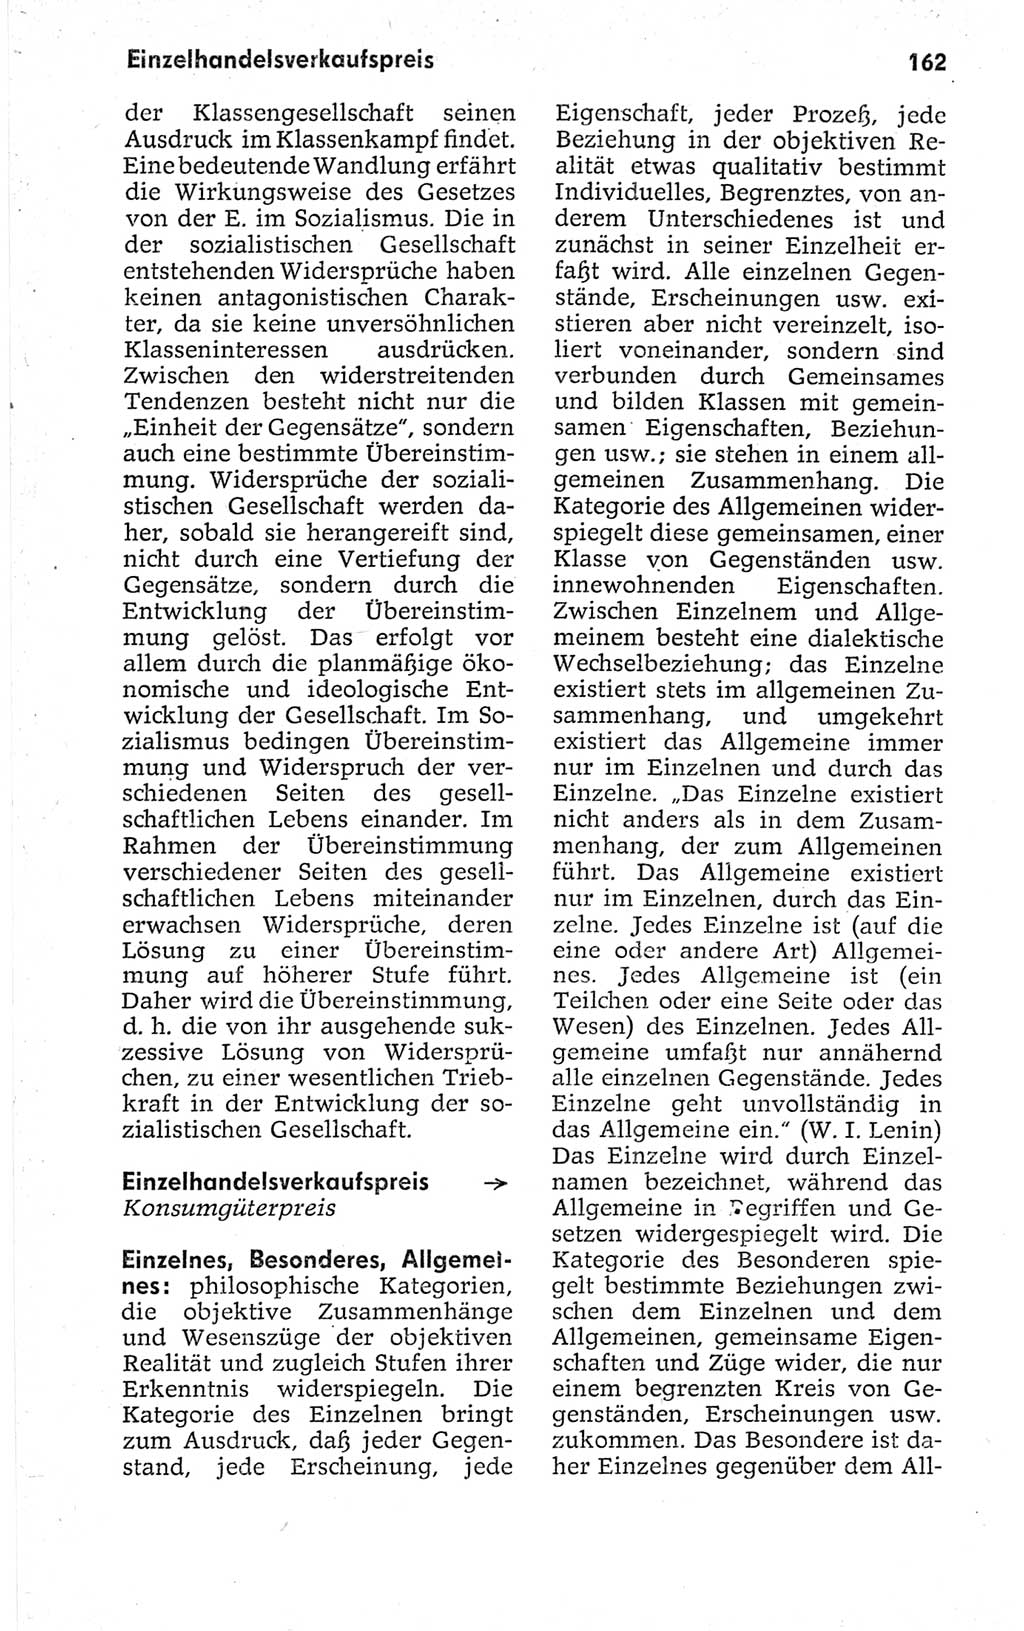 Kleines politisches Wörterbuch [Deutsche Demokratische Republik (DDR)] 1967, Seite 162 (Kl. pol. Wb. DDR 1967, S. 162)